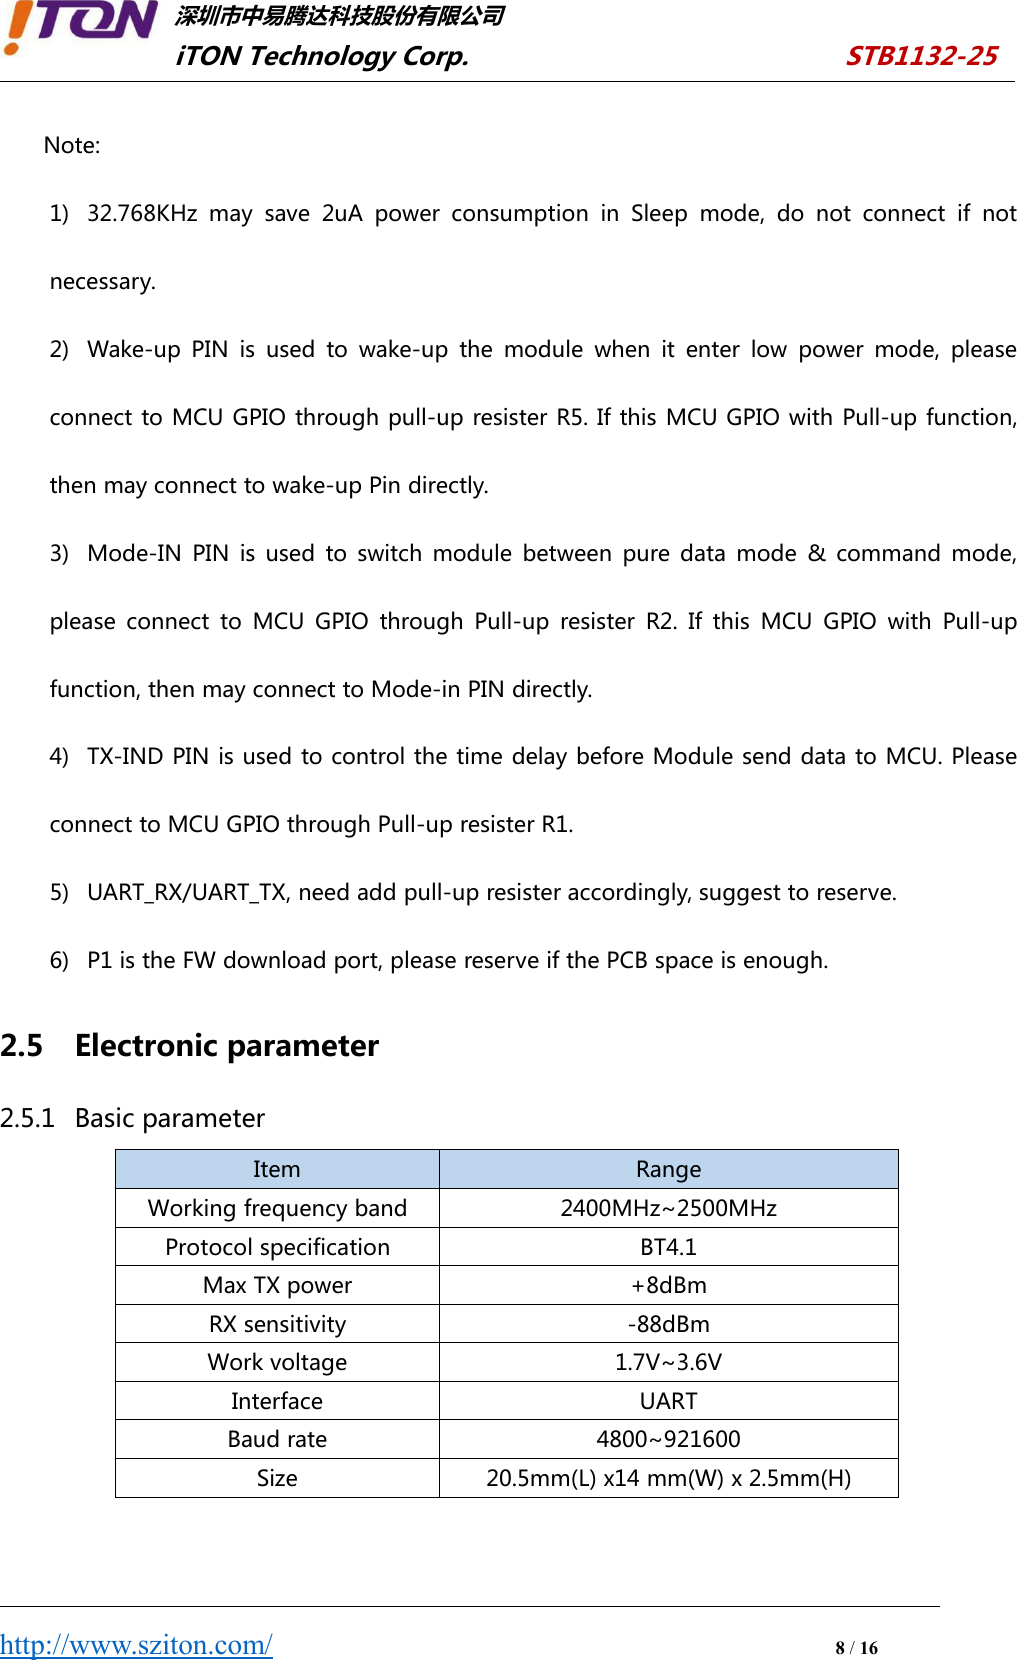 深圳市中易腾达科技股份有限公司iTON Technology Corp. STB1132-25http://www.sziton.com/8/16Note:1) 32.768KHz may save 2uA power consumption in Sleep mode, do not connect if notnecessary.2) Wake-up PIN is used to wake-up the module when it enter low power mode, pleaseconnect to MCU GPIO through pull-up resister R5. If this MCU GPIO with Pull-up function,then may connect to wake-up Pin directly.3) Mode-IN PIN is used to switch module between pure data mode &amp; command mode,please connect to MCU GPIO through Pull-up resister R2. If this MCU GPIO with Pull-upfunction, then may connect to Mode-in PIN directly.4) TX-IND PIN is used to control the time delay before Module send data to MCU. Pleaseconnect to MCU GPIO through Pull-up resister R1.5) UART_RX/UART_TX, need add pull-up resister accordingly, suggest to reserve.6) P1 is the FW download port, please reserve if the PCB space is enough.2.5 Electronic parameter2.5.1 Basic parameterItemRangeWorking frequency band2400MHz~2500MHzProtocol specificationBT4.1Max TX power+8dBmRX sensitivity‐88dBmWork voltage1.7V~3.6VInterfaceUARTBaud rate4800~921600Size20.5mm(L) x14 mm(W) x 2.5mm(H)